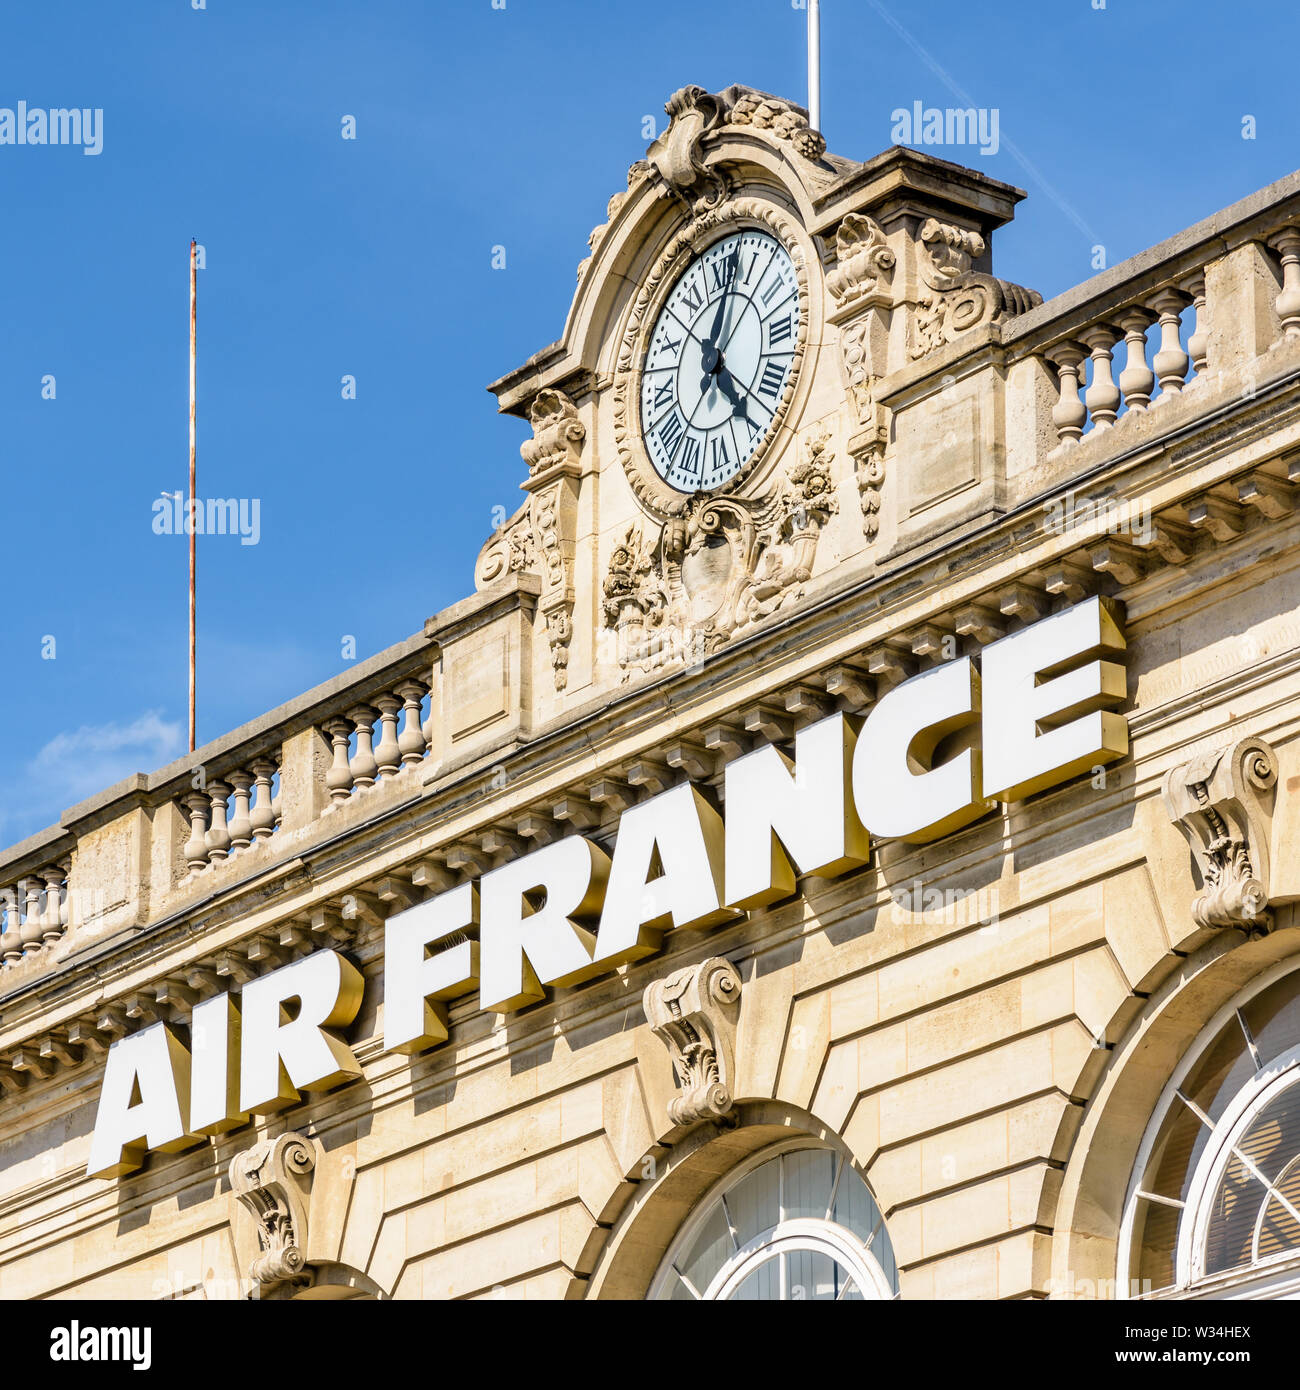 Der Air France von" auf der Fassade des Invalides air terminal angebracht, ein ehemaliger Bahnhof in Paris, Frankreich. Stockfoto